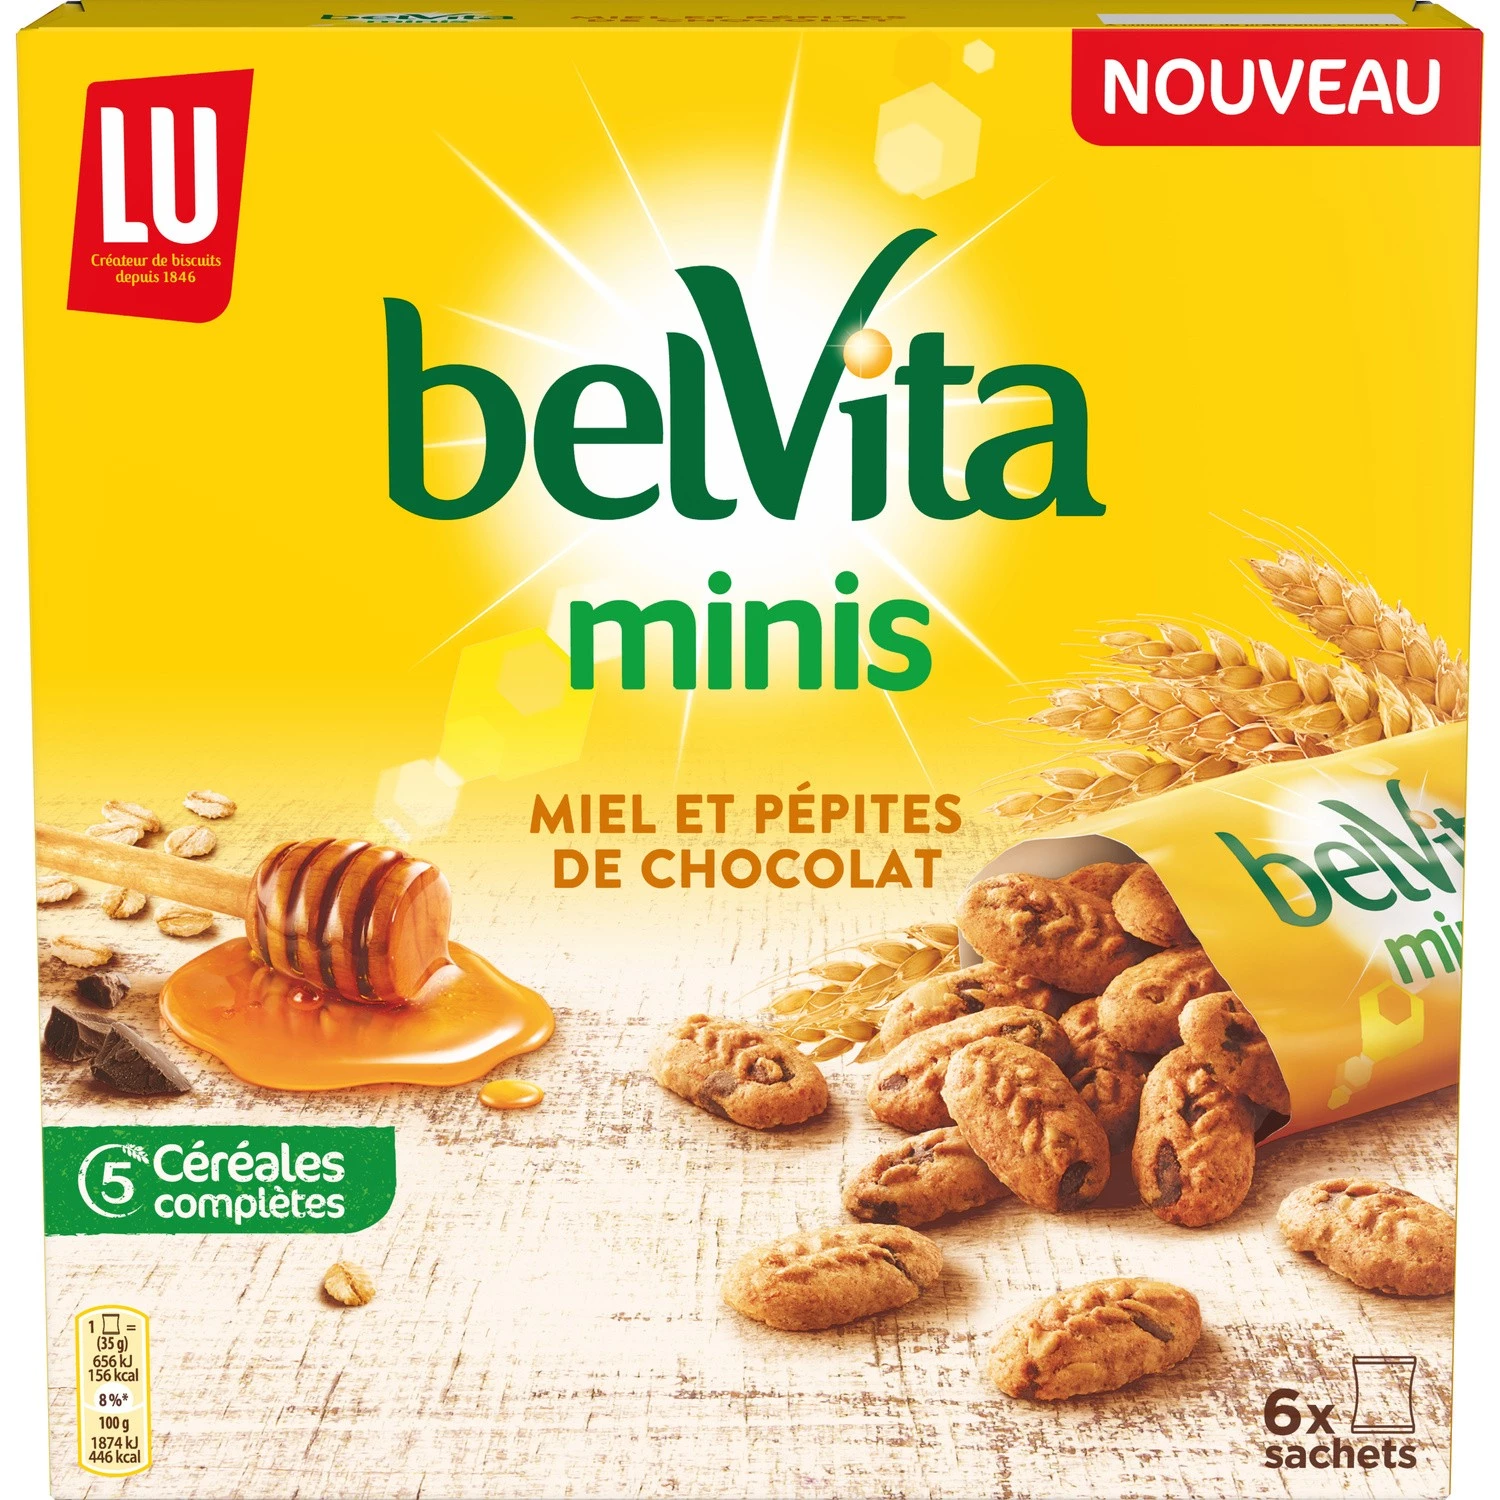 Biscuits petit déjeuner miel et pépites de chocolats 210g - BELVITA